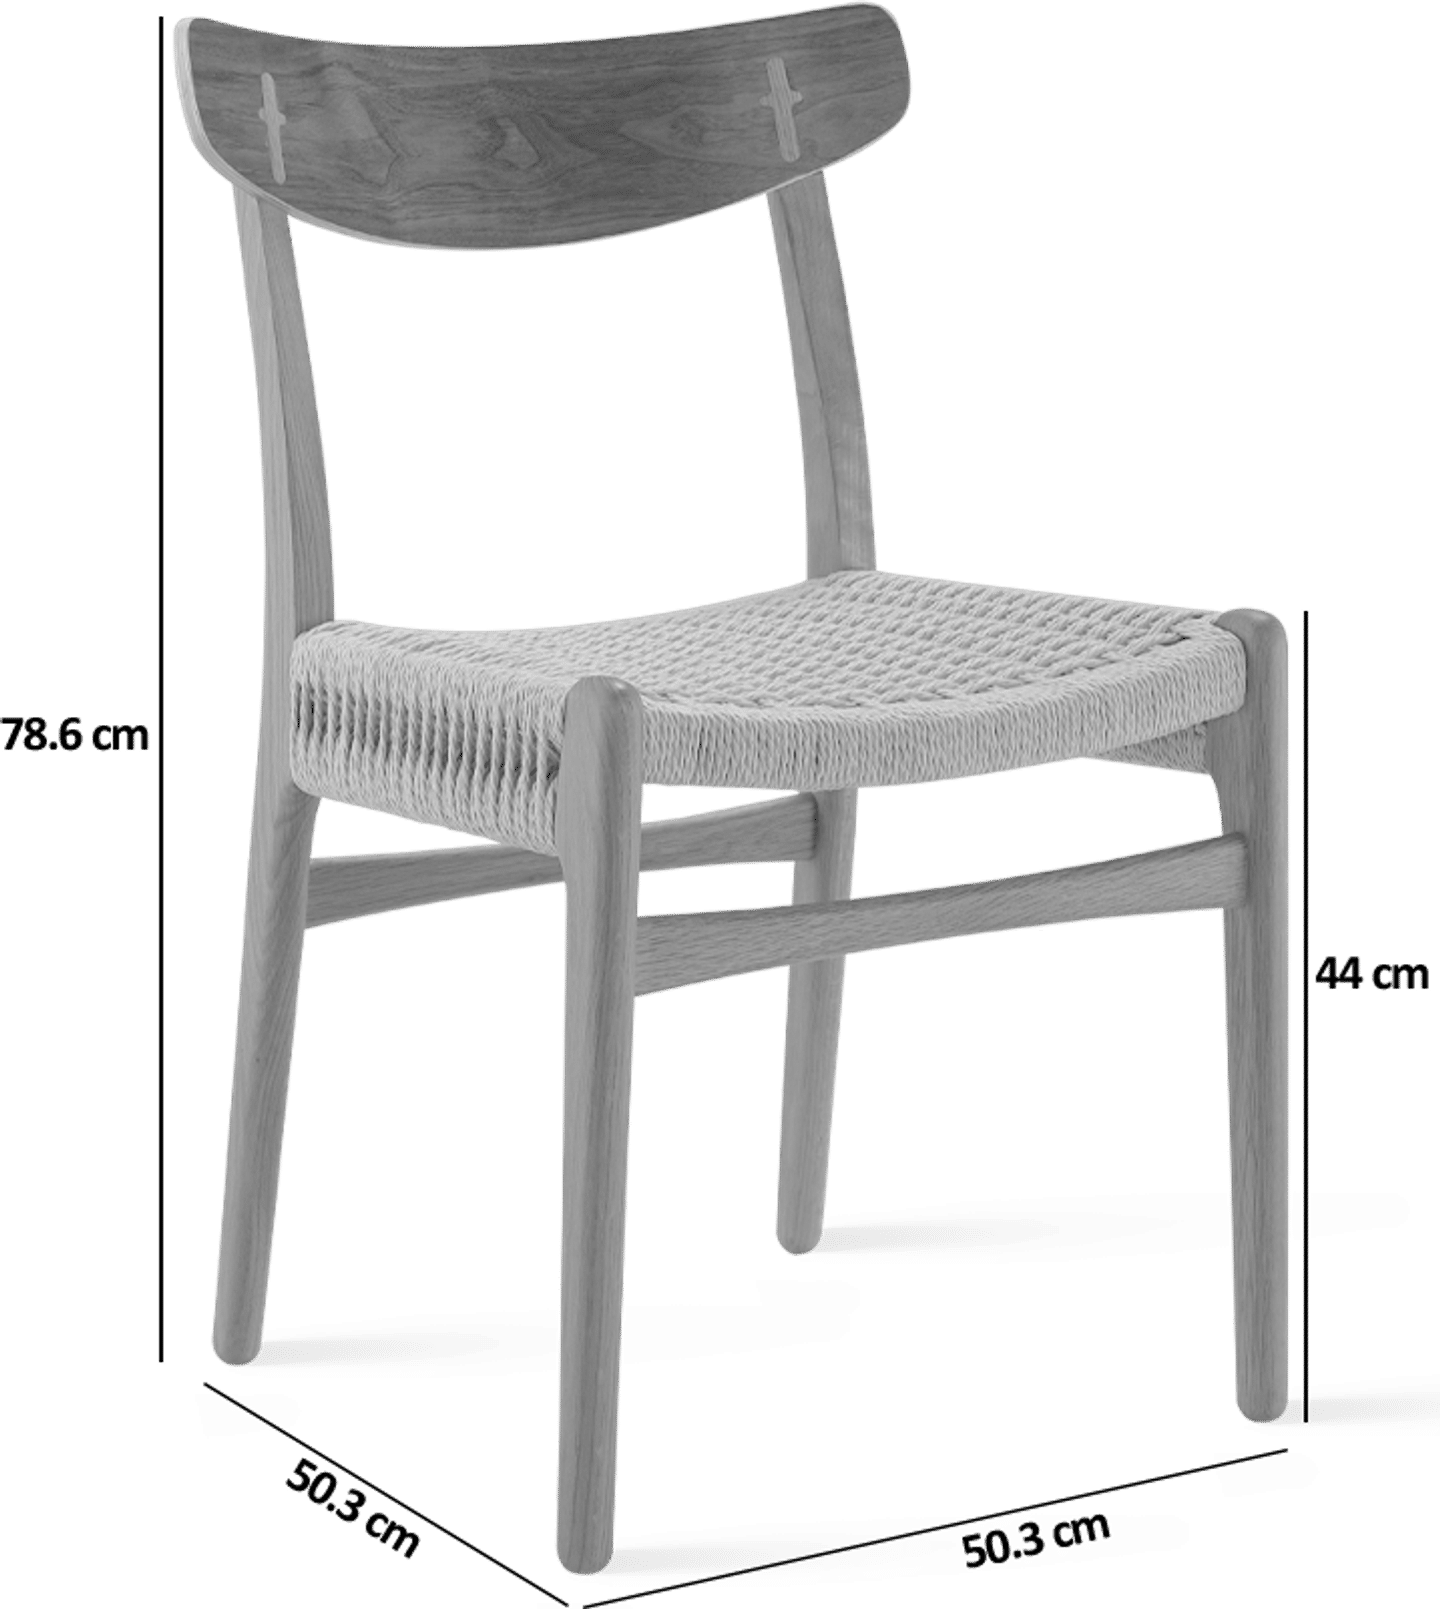 CH23 Chair Walnut / Oak image.